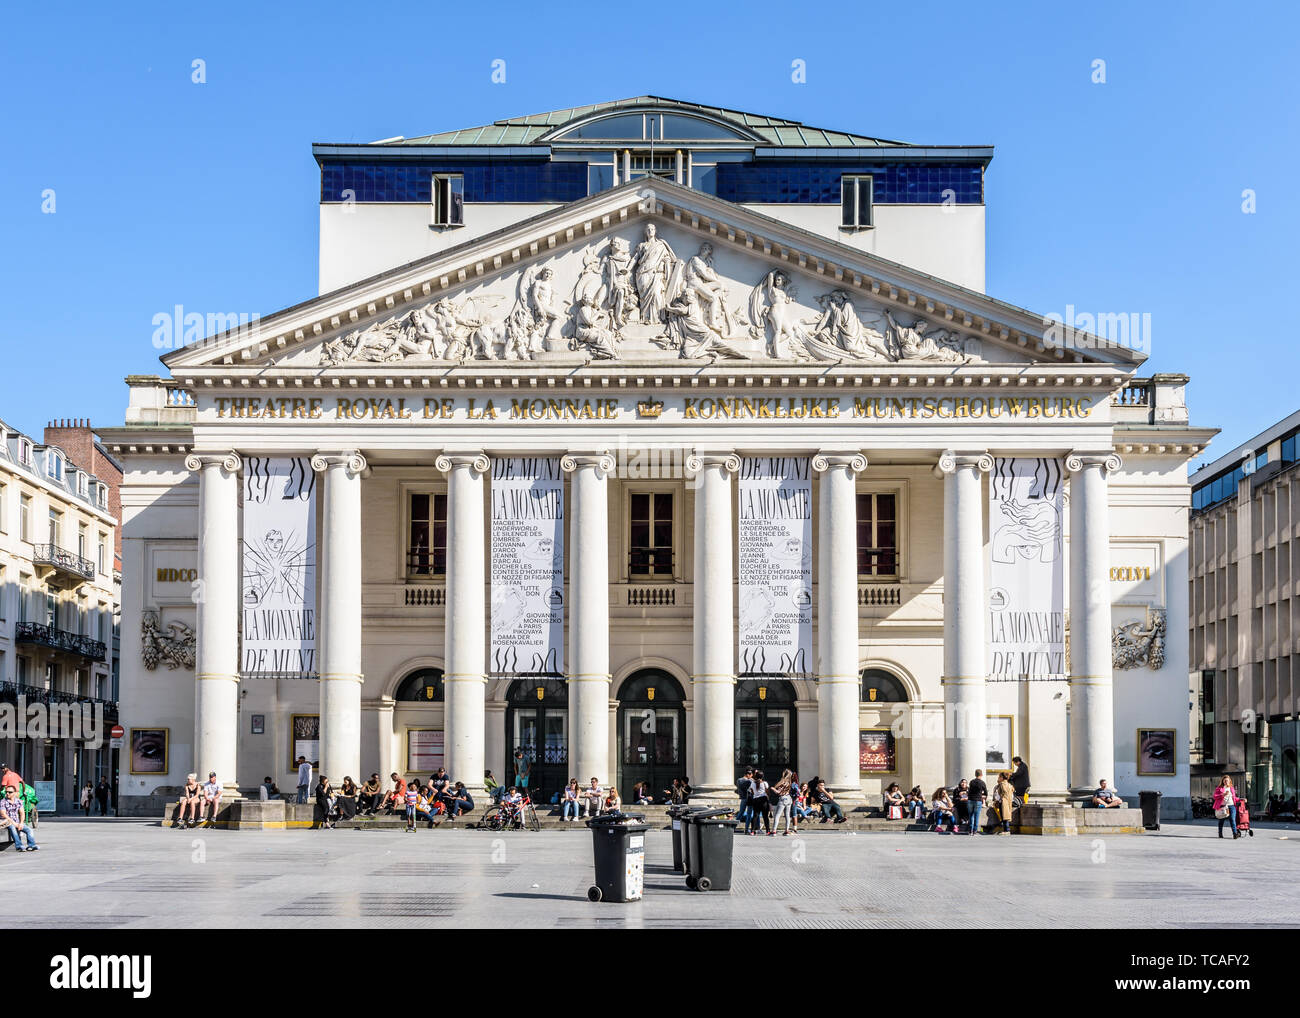 Vue avant de le Théâtre Royal de la monnaie, l'opéra dans le centre historique de Bruxelles, Belgique. Banque D'Images